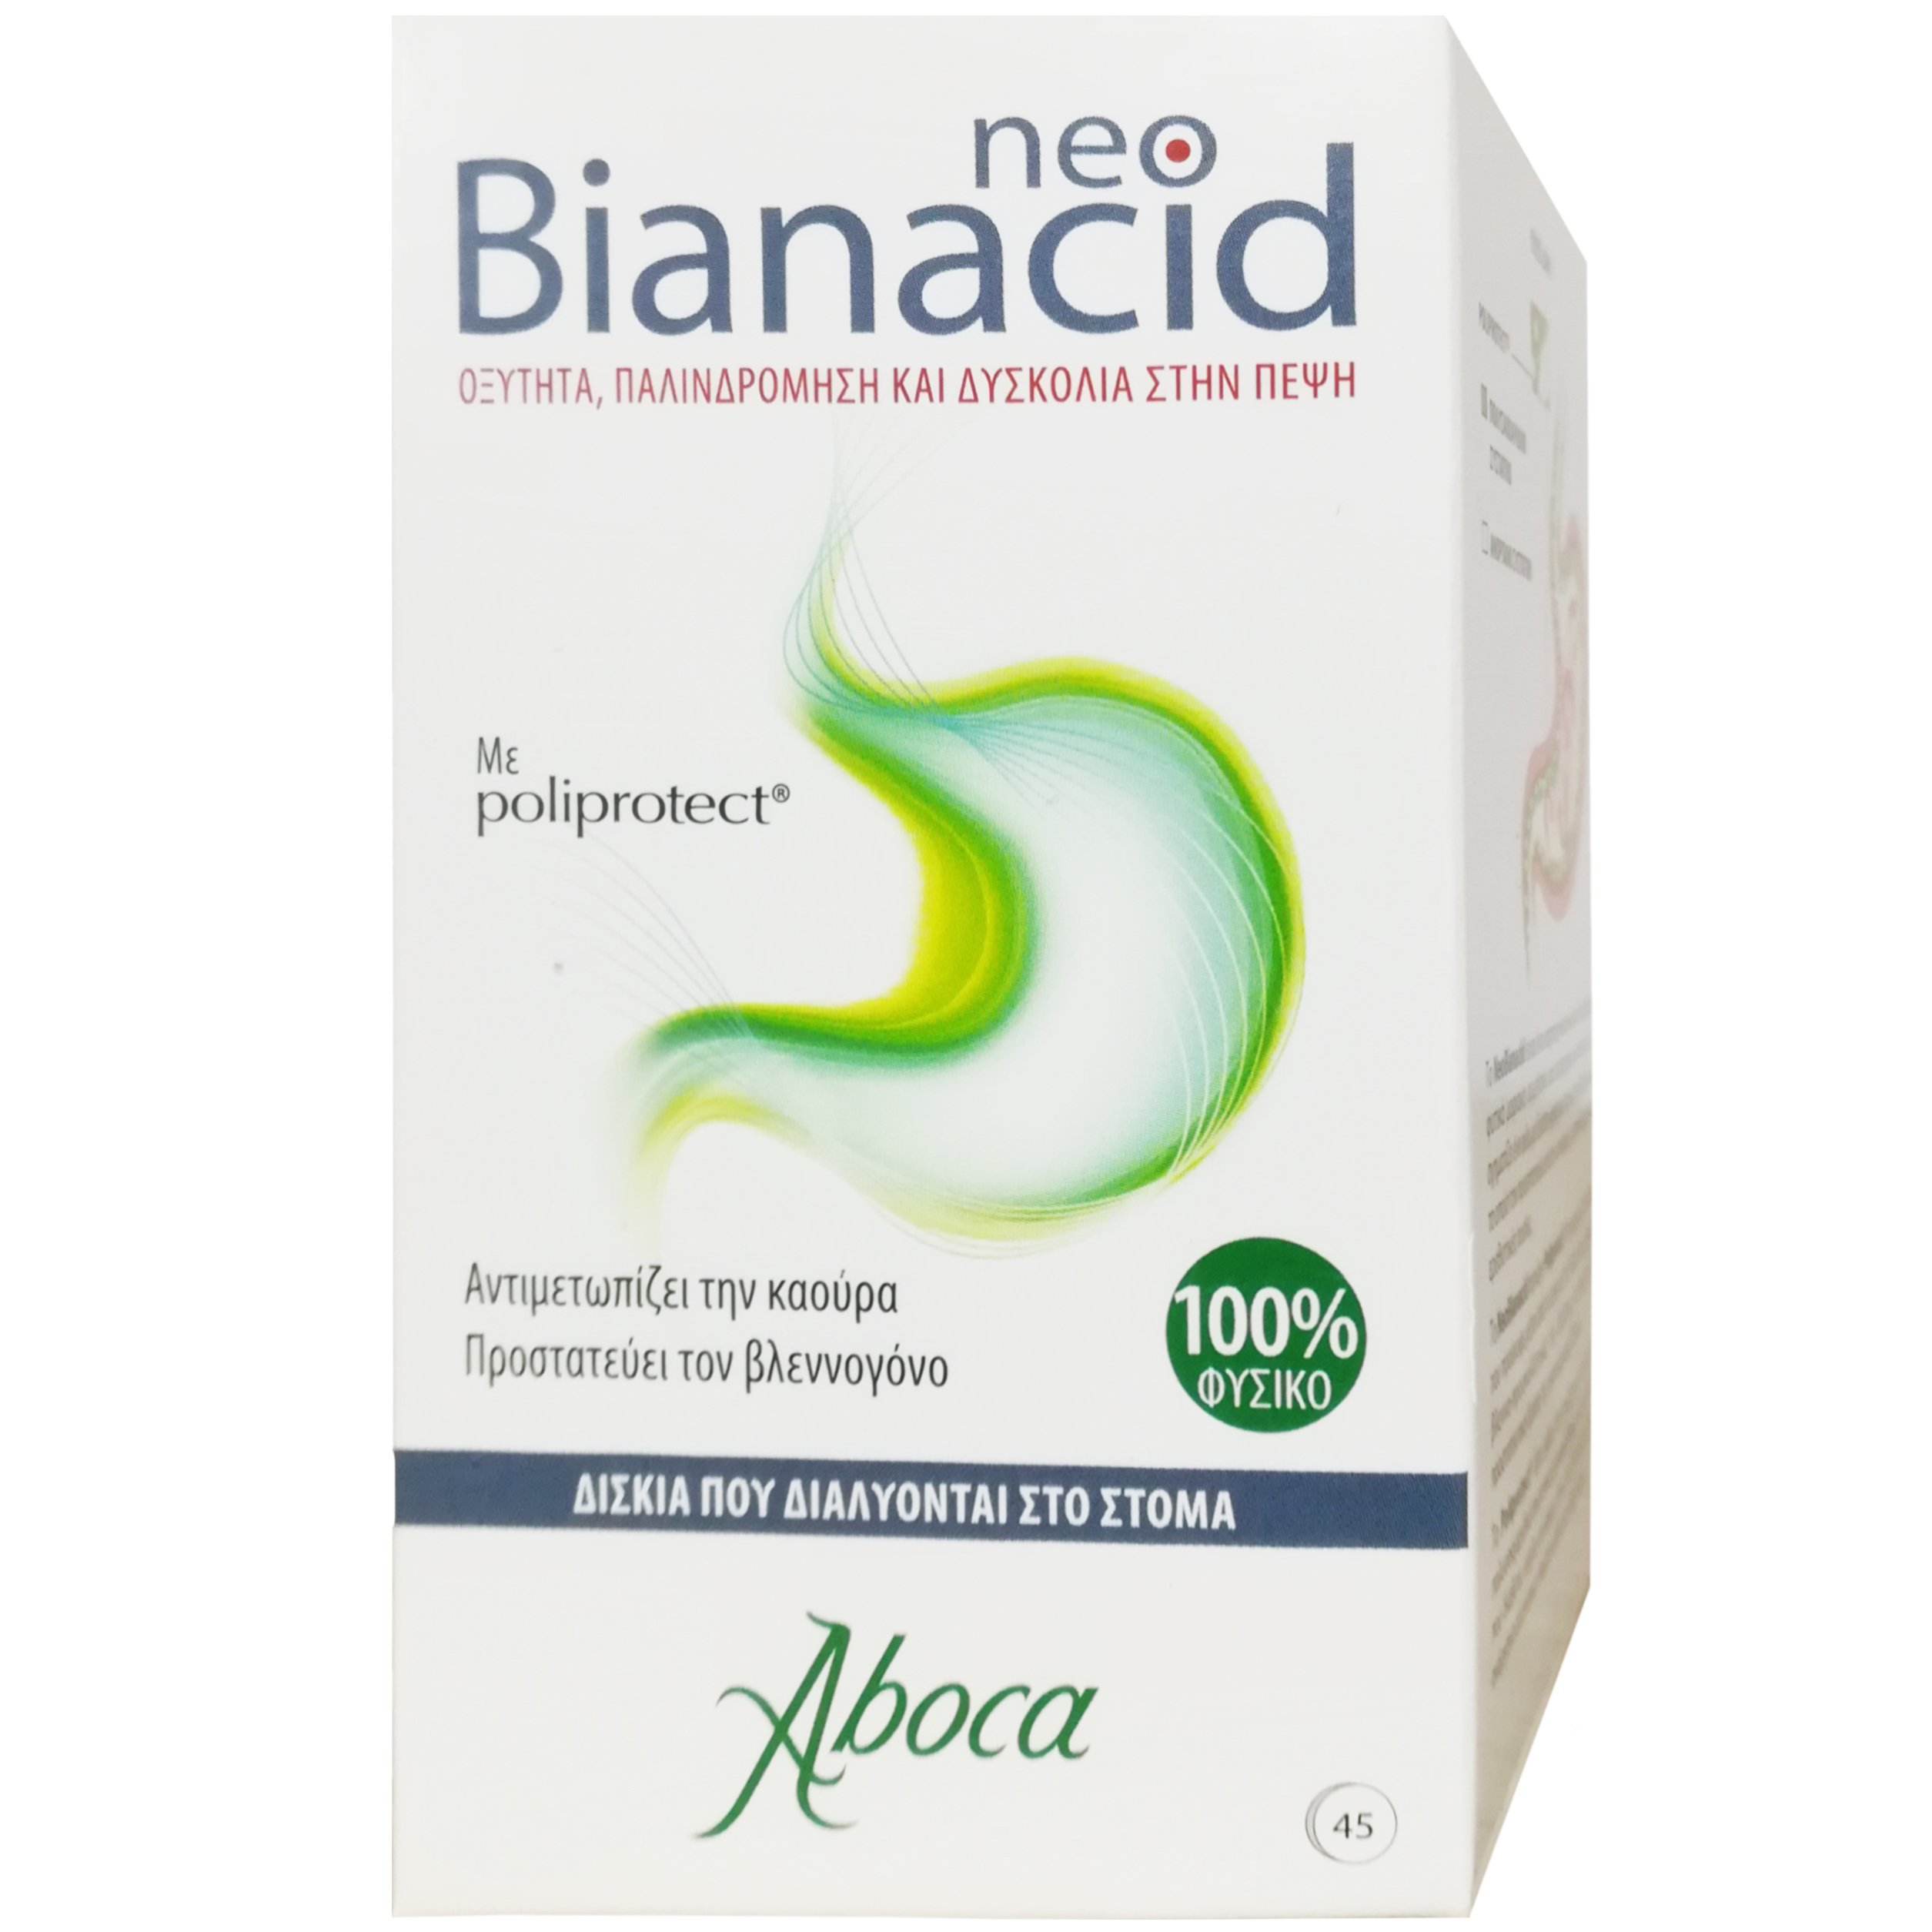 Aboca Aboca NeoBianacid Συμπλήρωμα Διατροφής για την Αντιμετώπιση της Γαστροοισοφαγικής Παλινδρόμησης & της Καούρας 45tabs